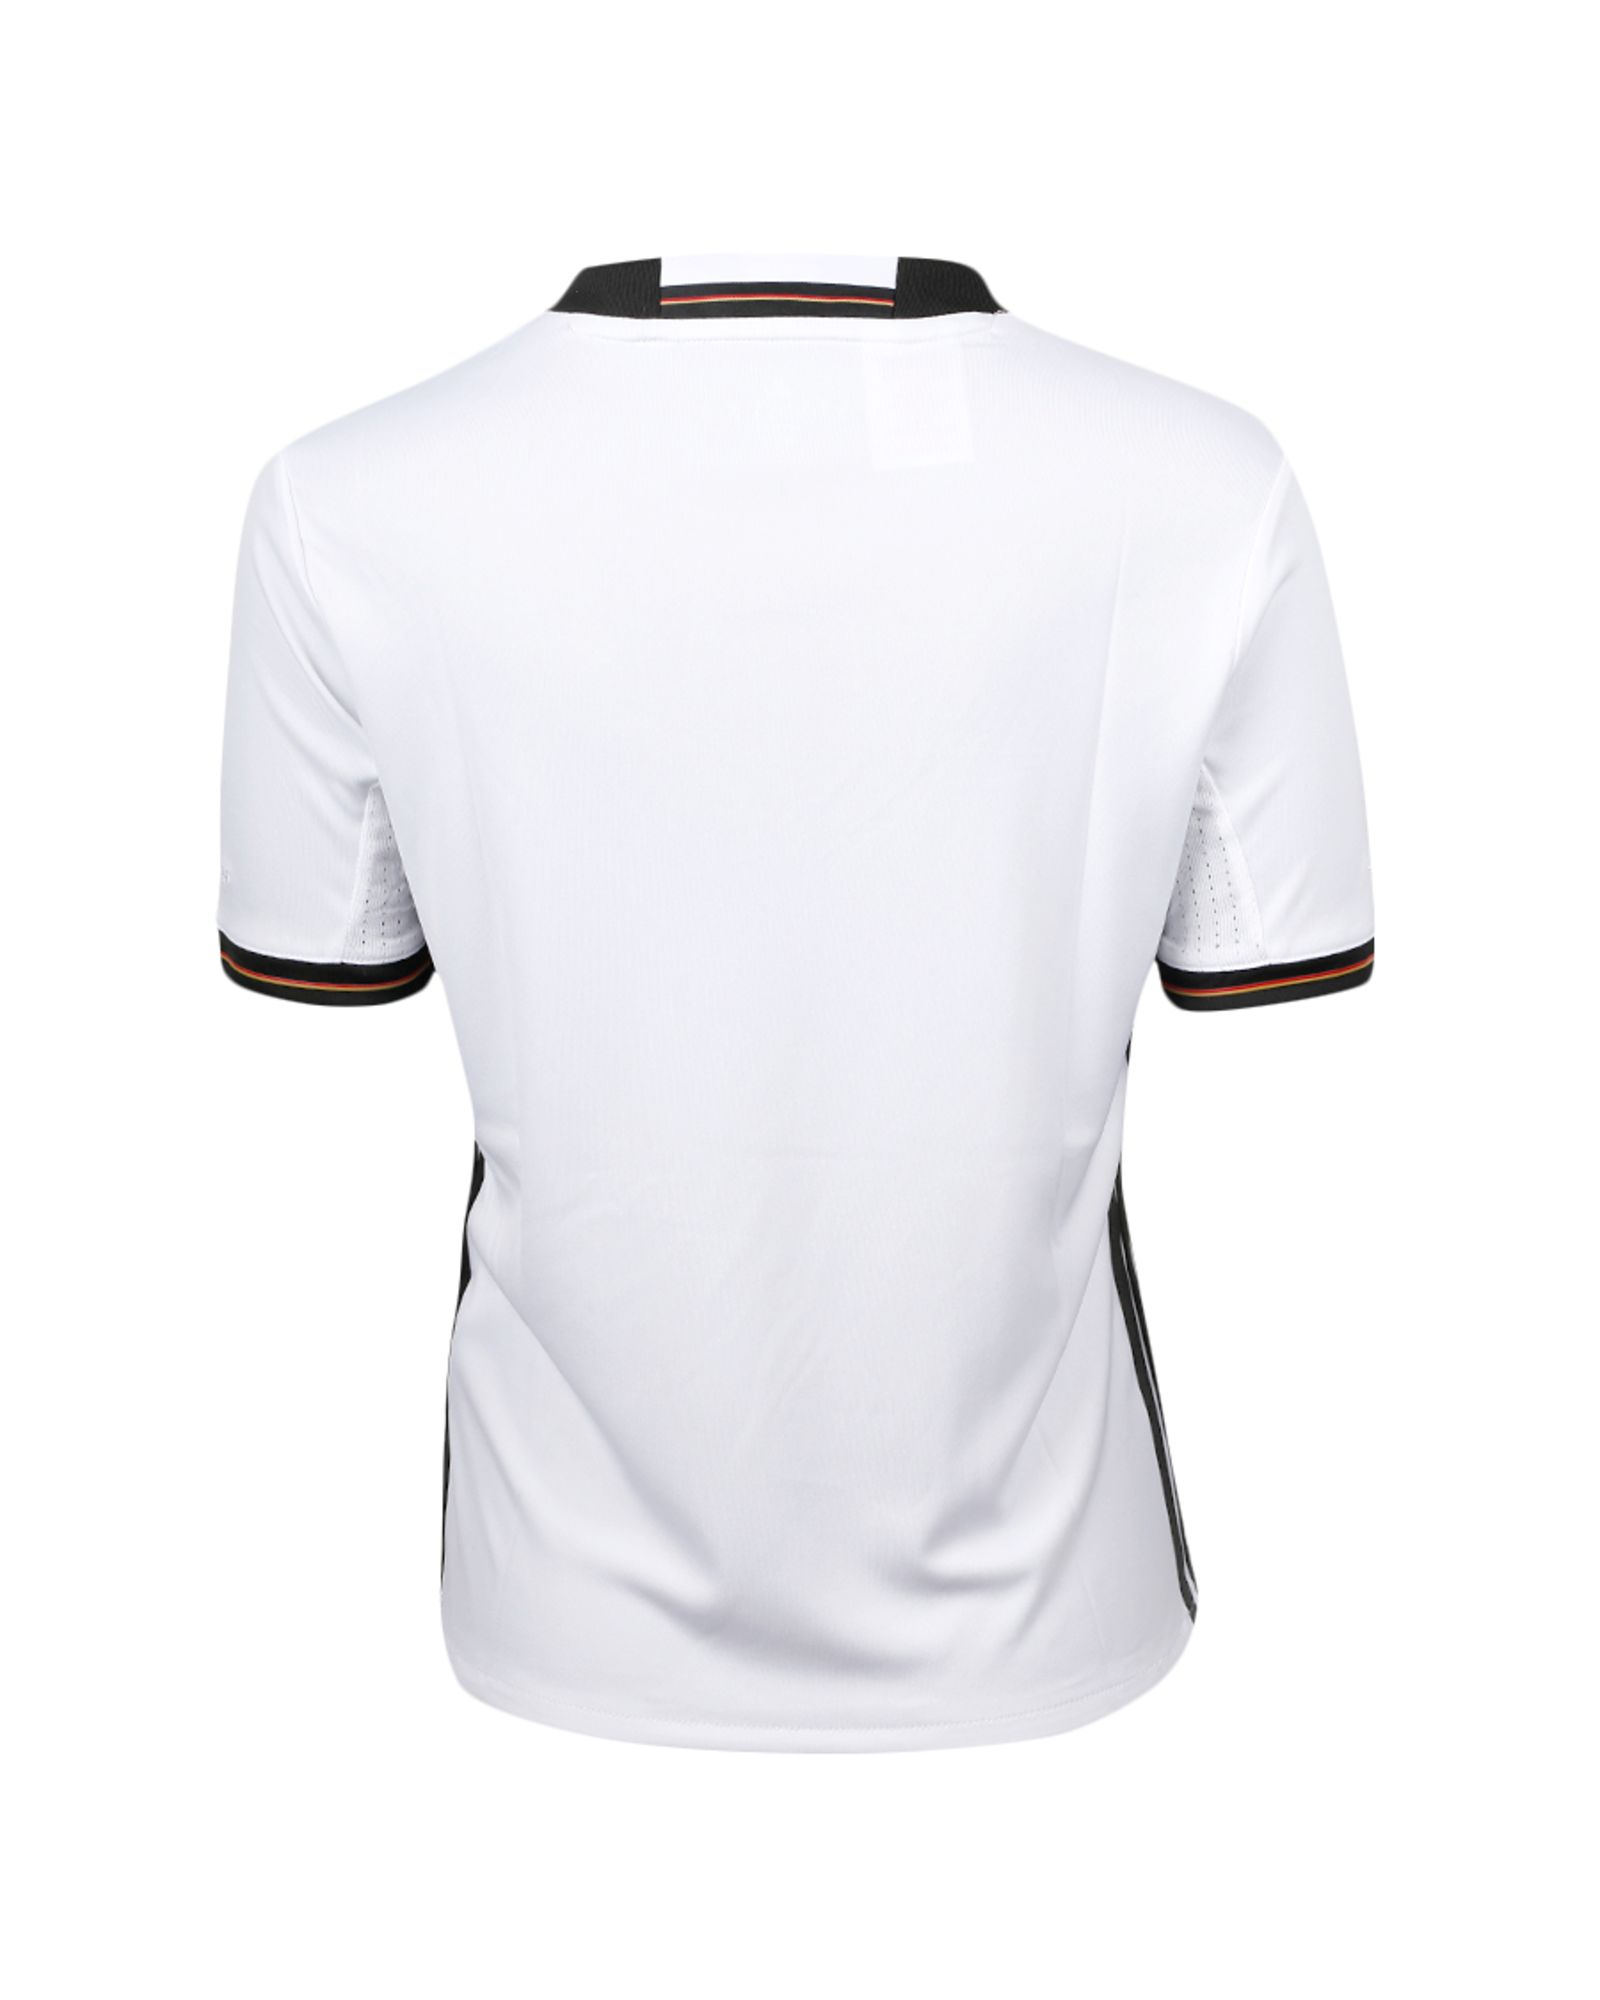 Camiseta 1ª Alemania Eurocopa 2016 Junior Blanco - Fútbol Factory